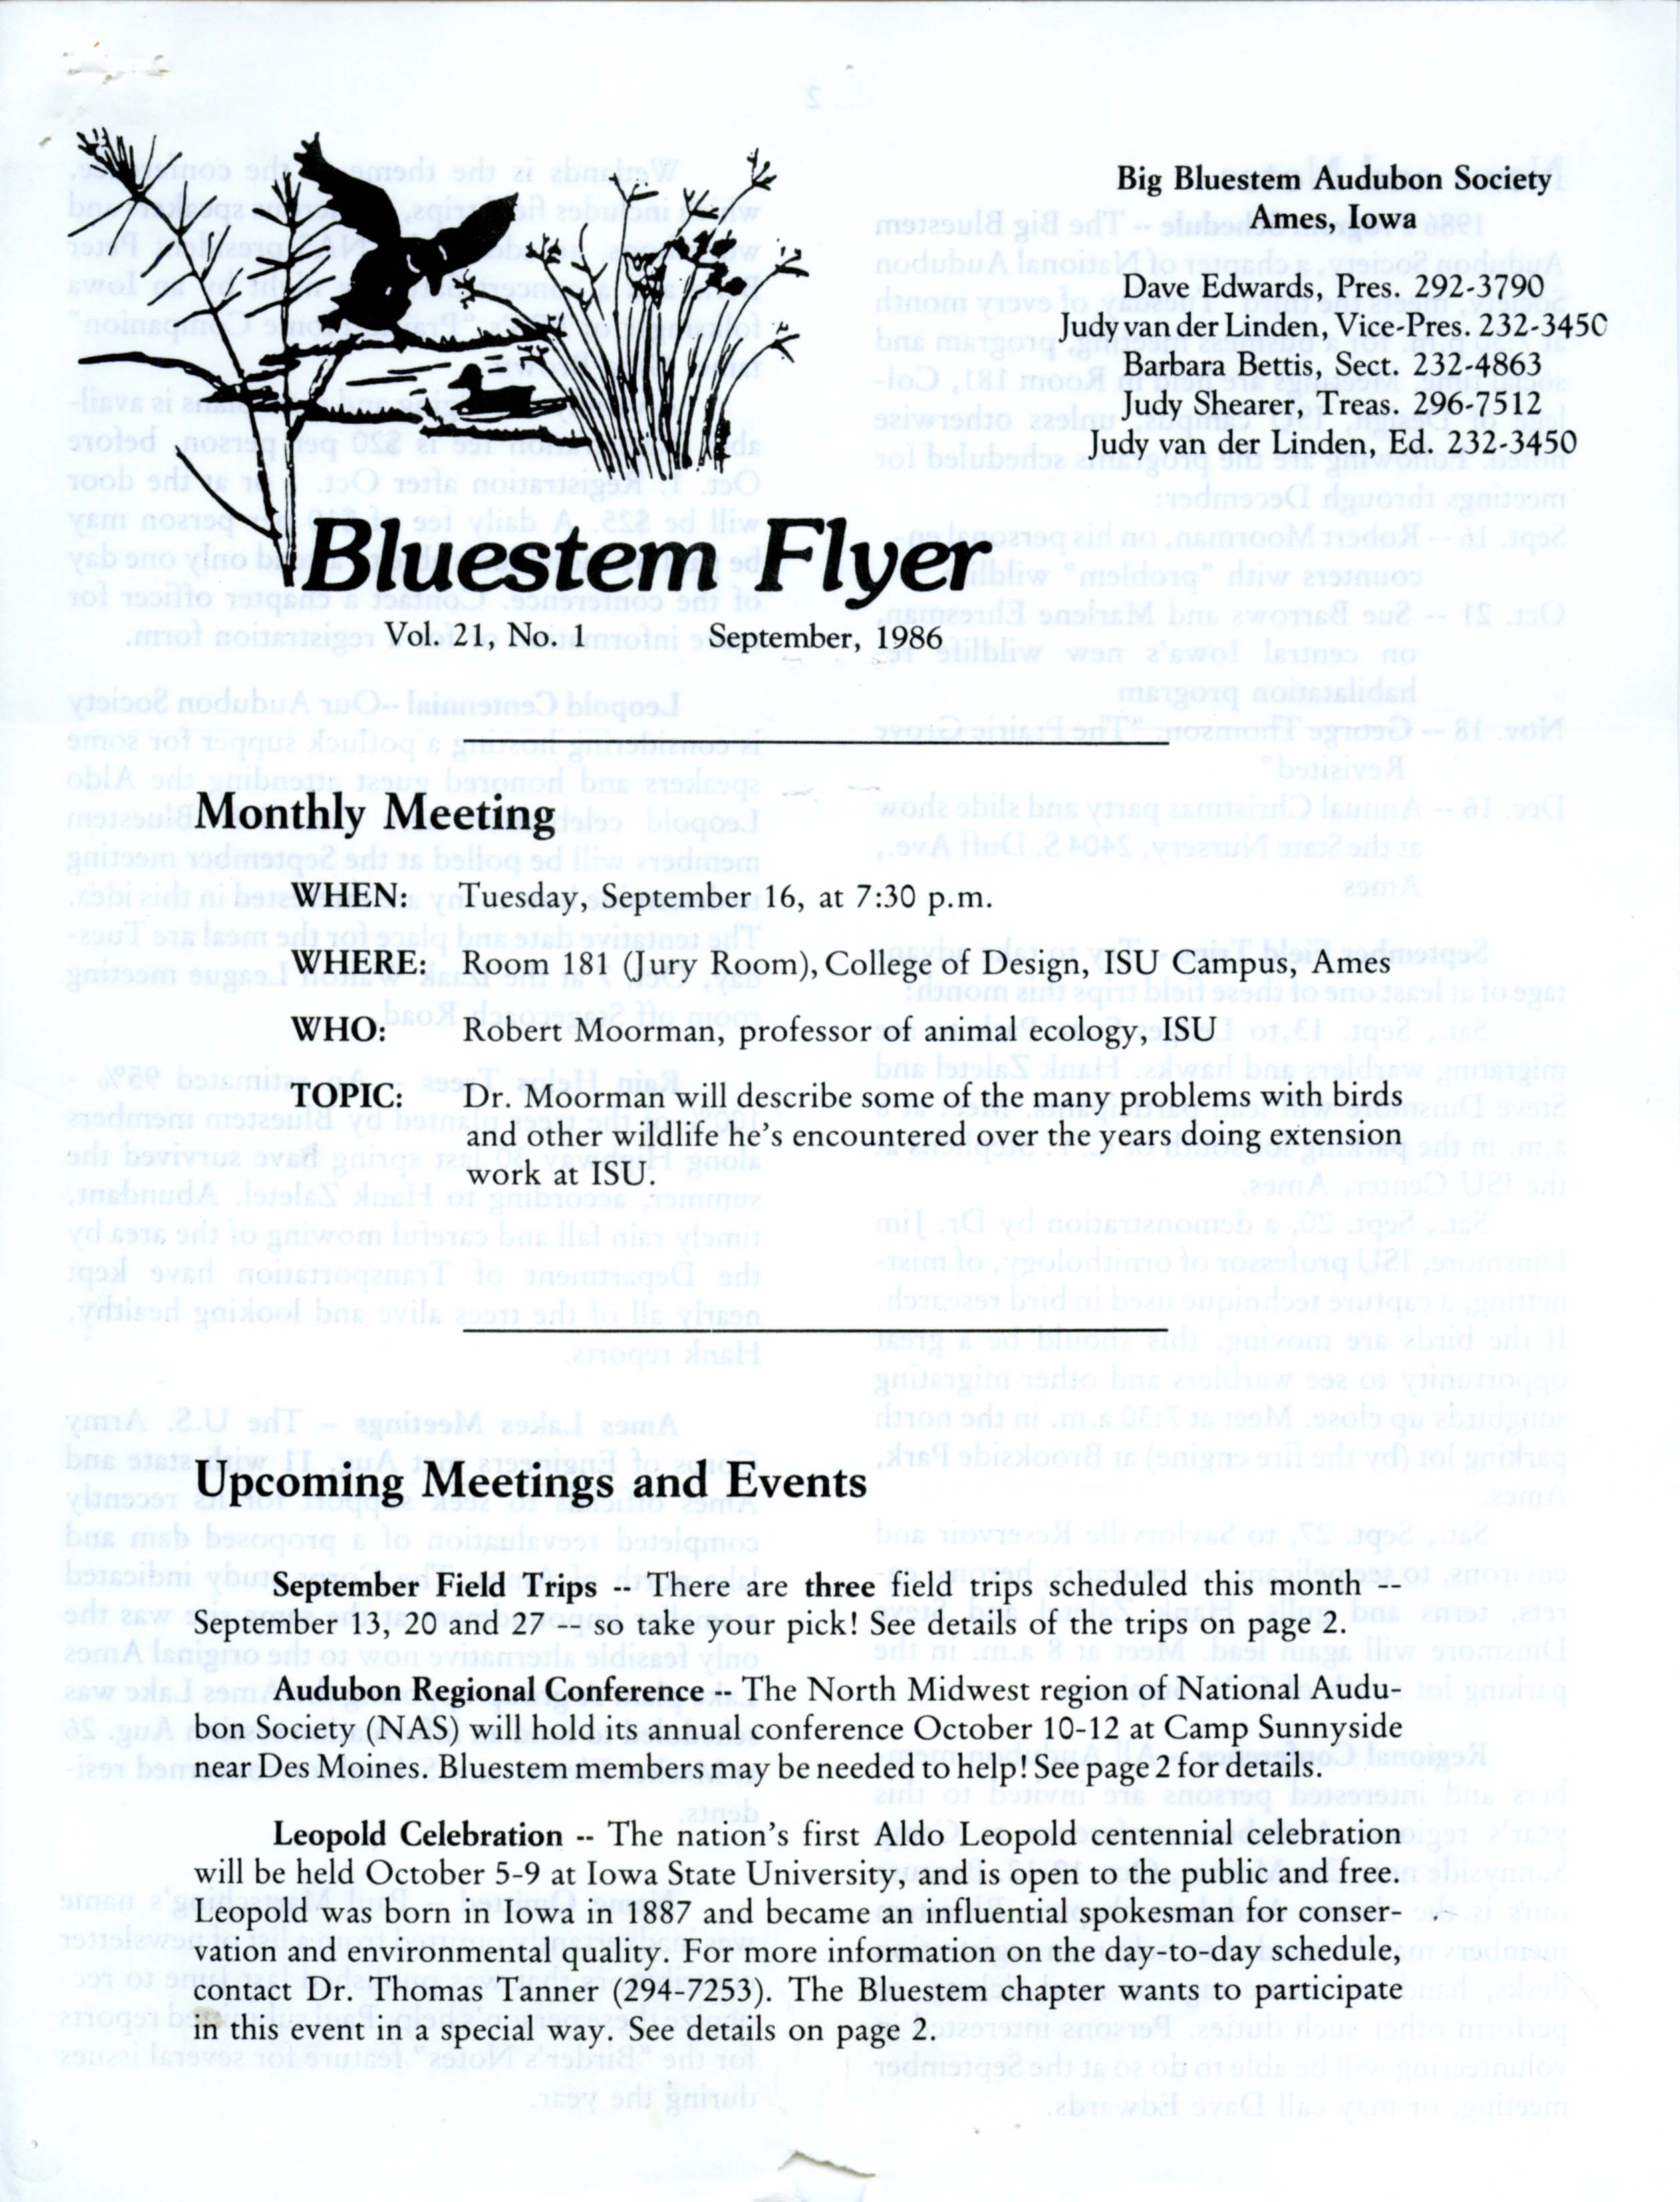 Bluestem Flyer, Volume 21, Number 1, September 1986 